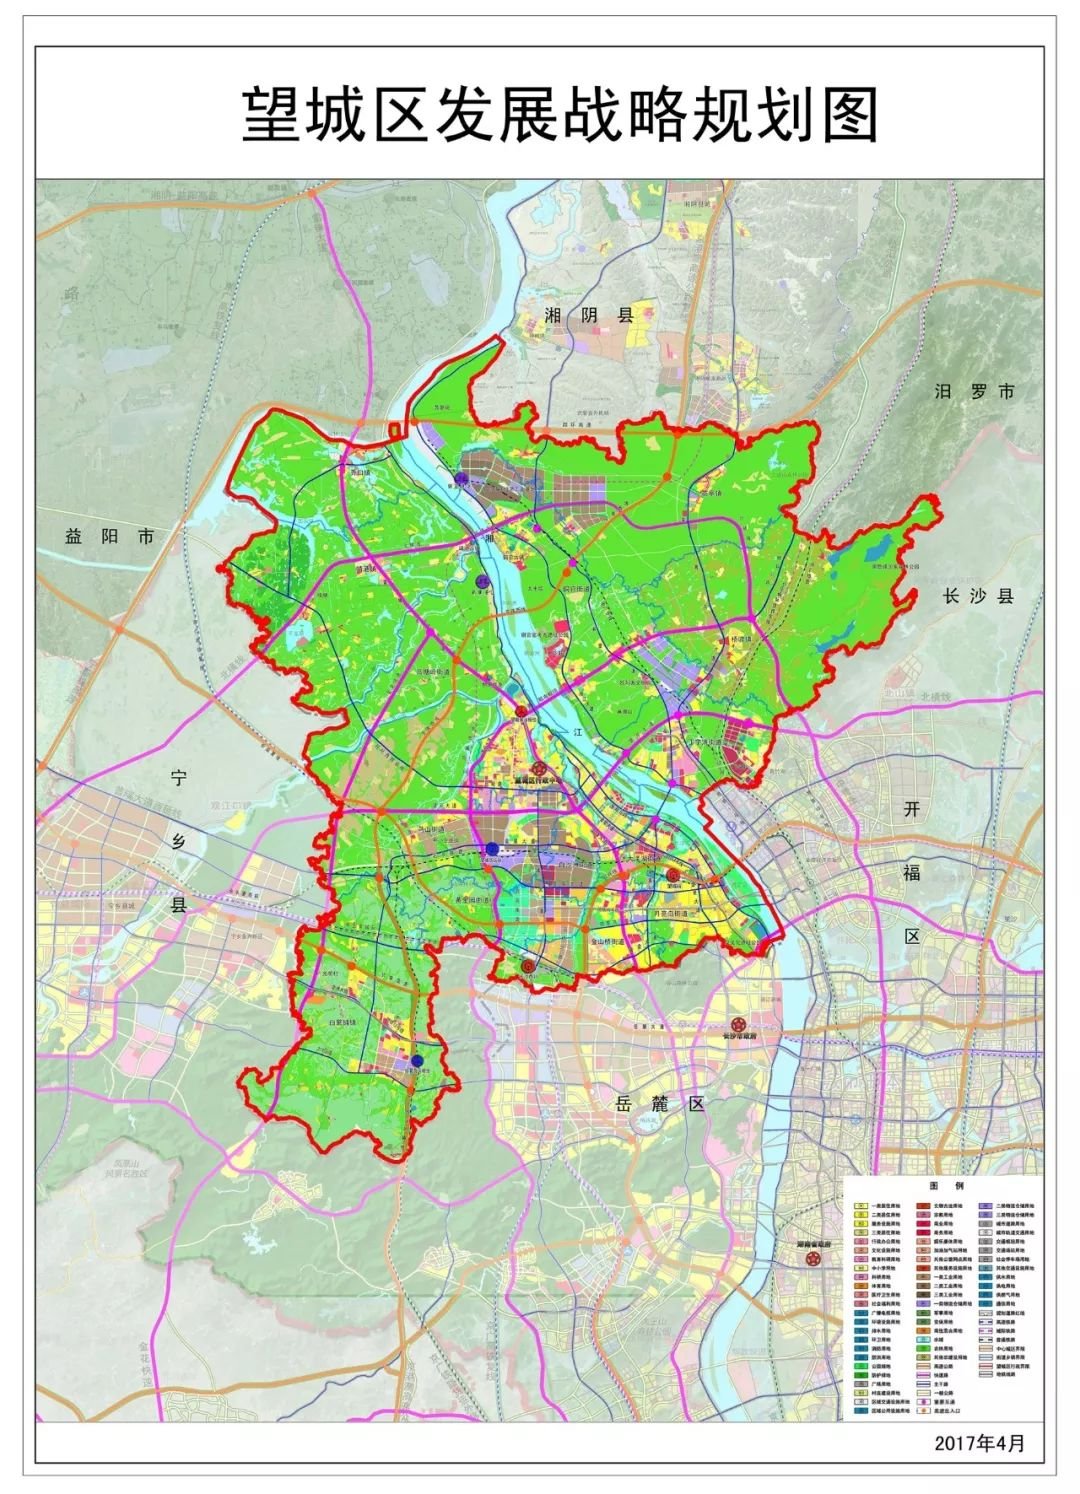 参考资料 20170409望城区2050远景发展战略规划 轨道交通规划磋商